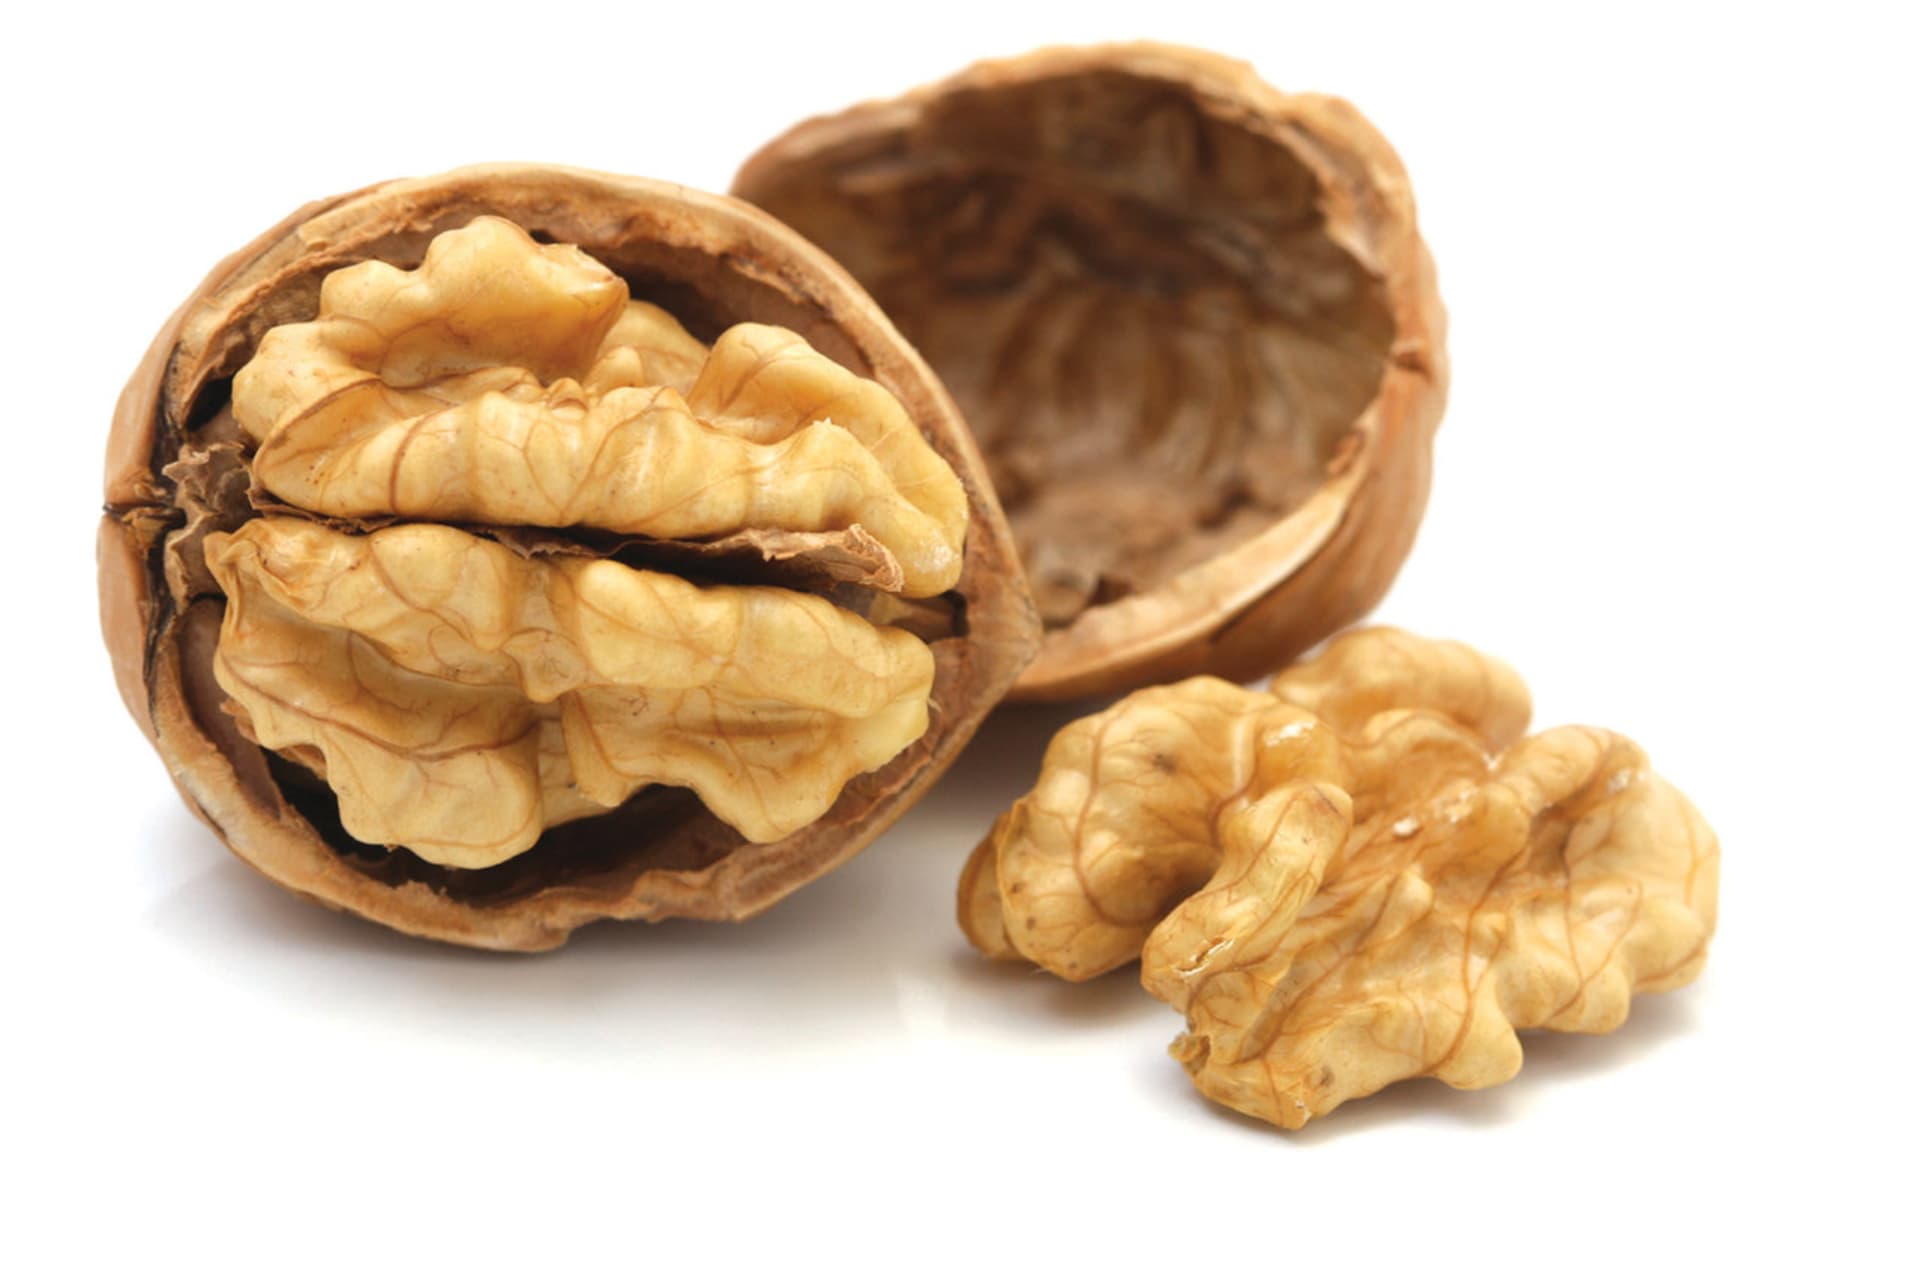 Vlašské ořechy lidé milovali odpradávna - už jen kvůli tvaru, který připomíná lidský mozek